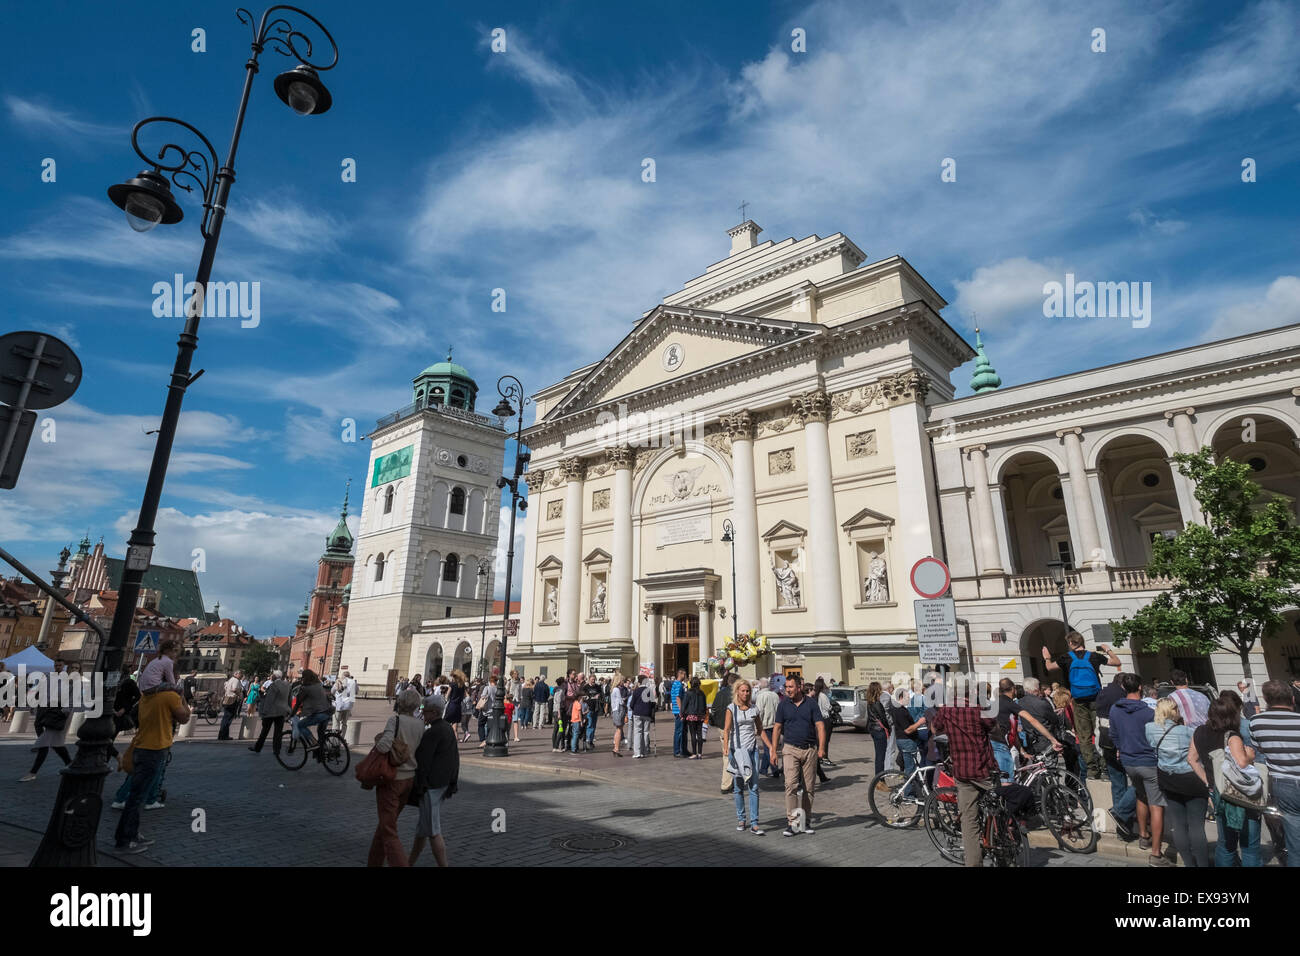 Tourists walking on Krakowskie Przedmiescie street, near St Annes Church, Warsaw, Poland Stock Photo